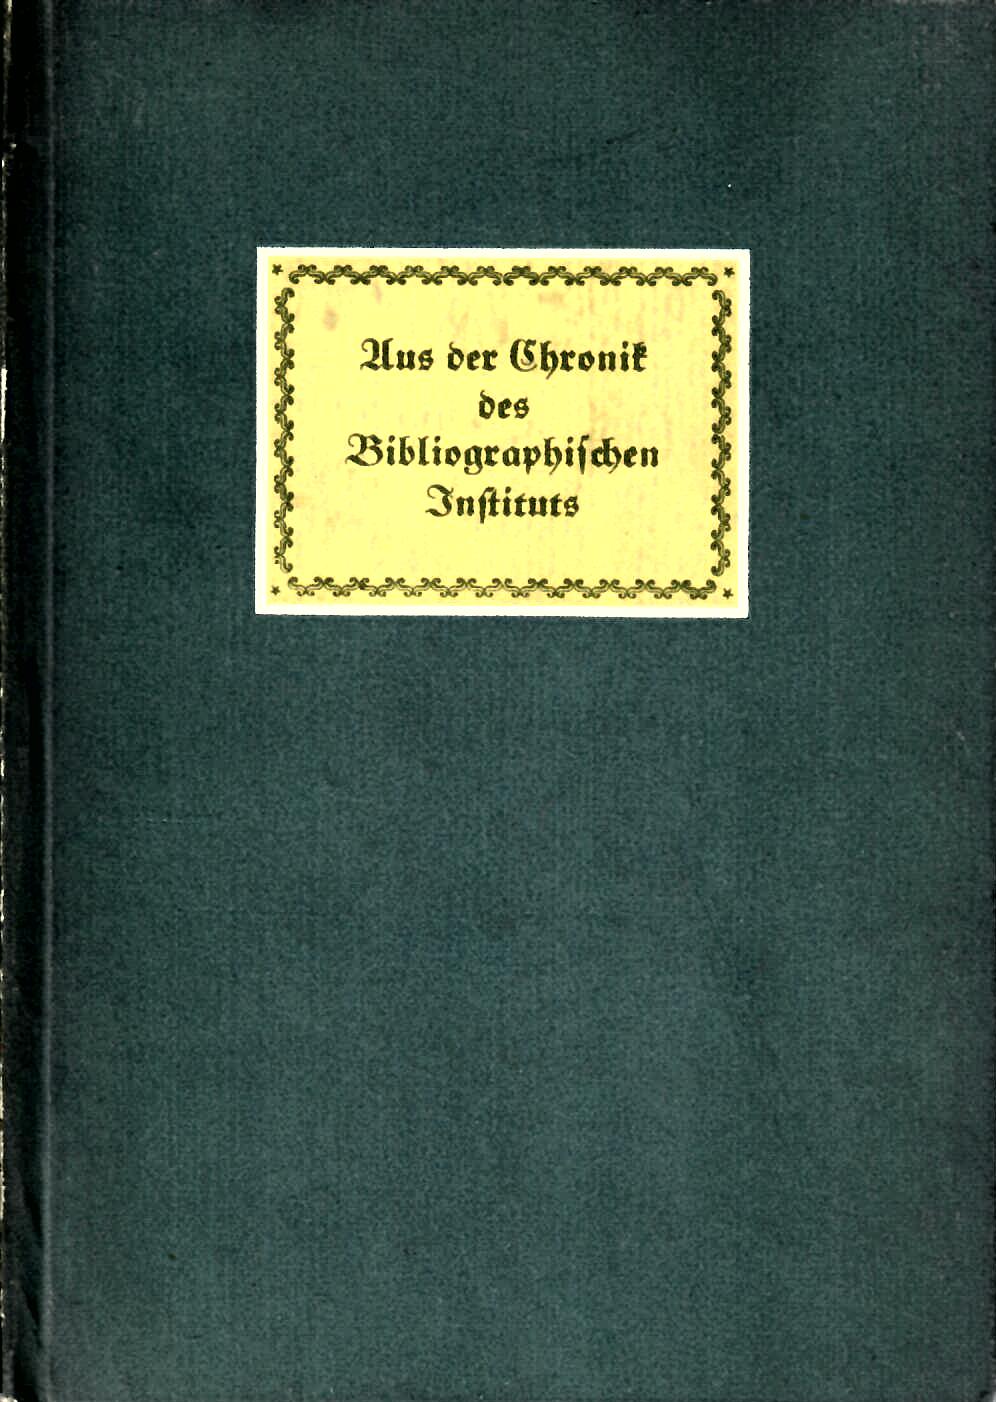 Schultze, Werner   : Aus der Chronik des Bibliographischen Instituts von Dr. Werner Schultze : Bibliographisches Institut Leipzig 1936